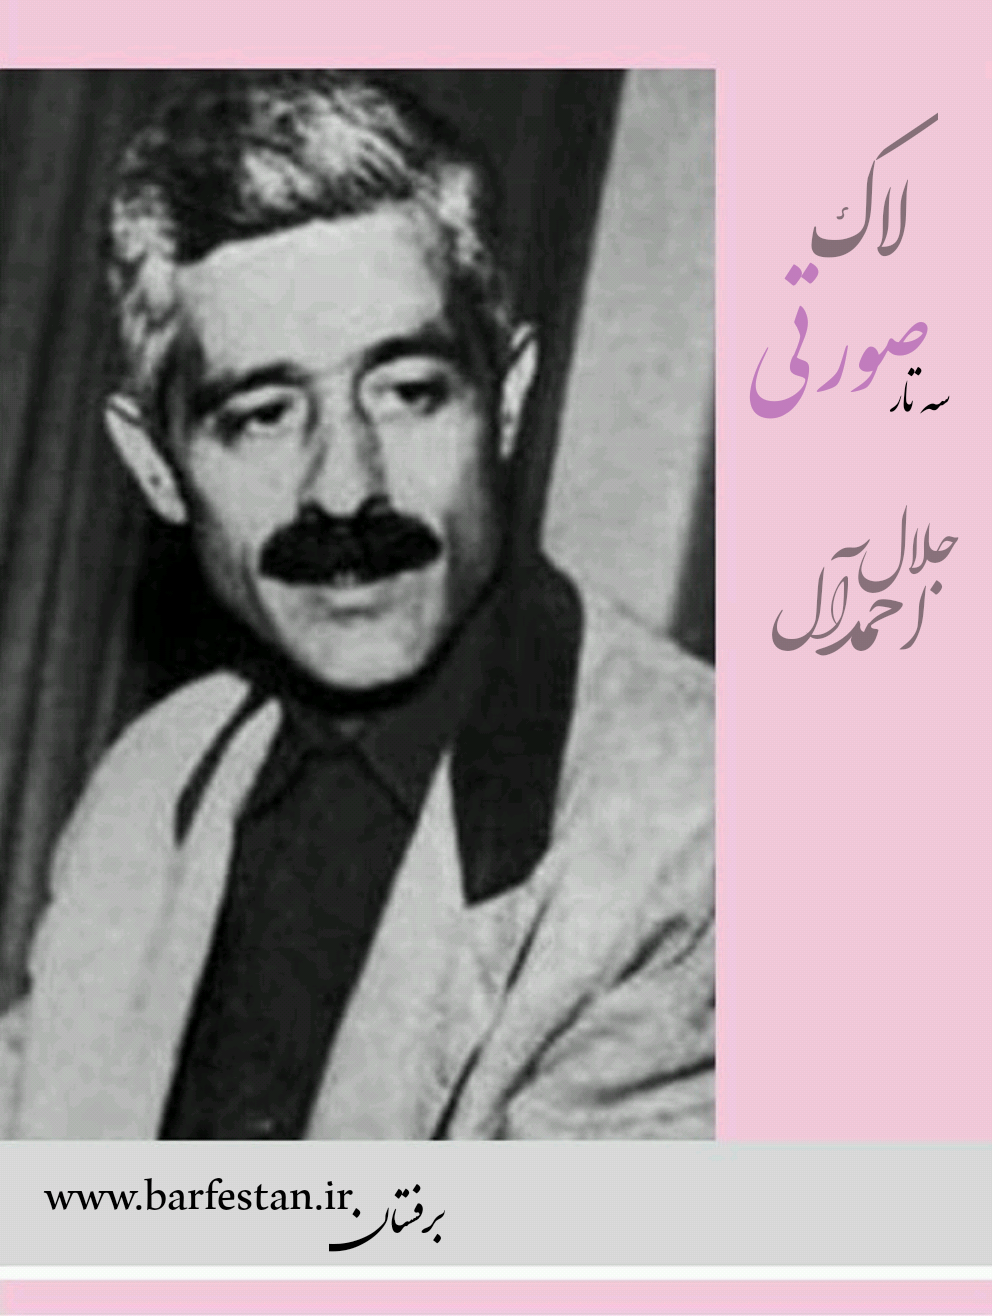 برفستان؛اتاق نقد ادبی(قسمت چهارم )لاک صورتی جلال آل احمد